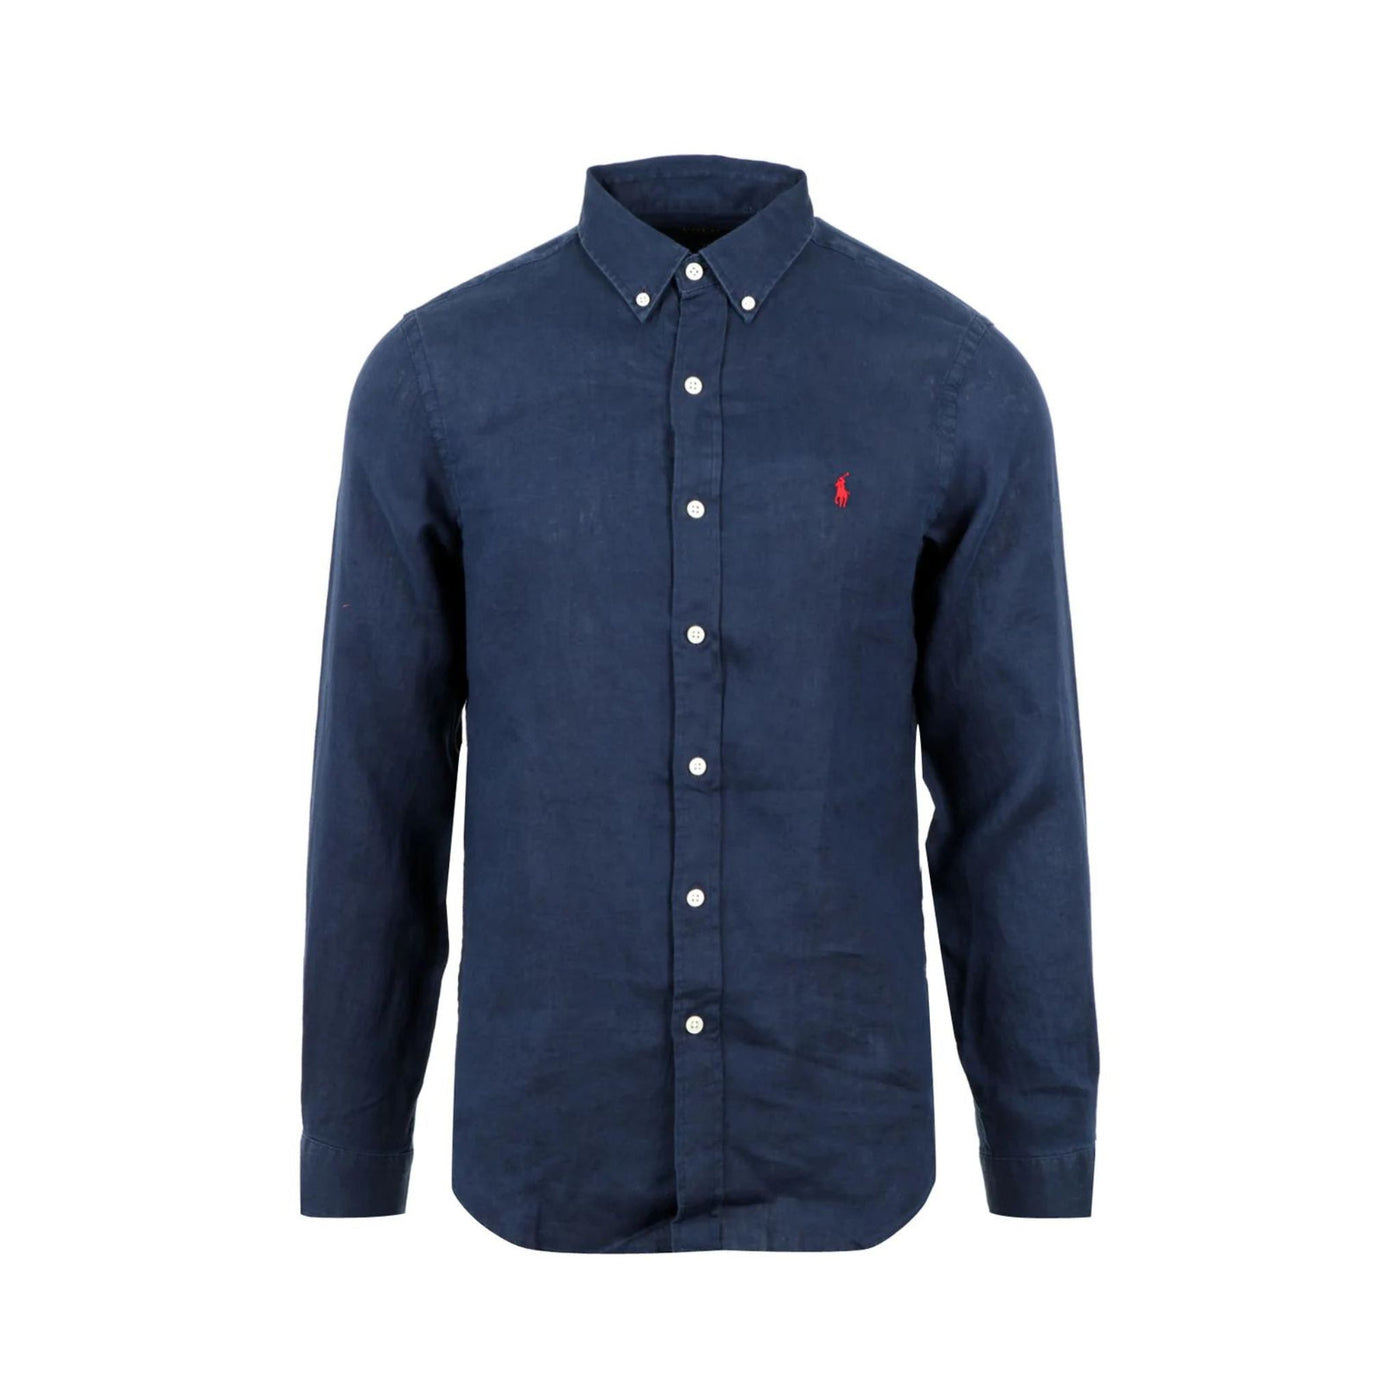 Blue button-down men's shirt